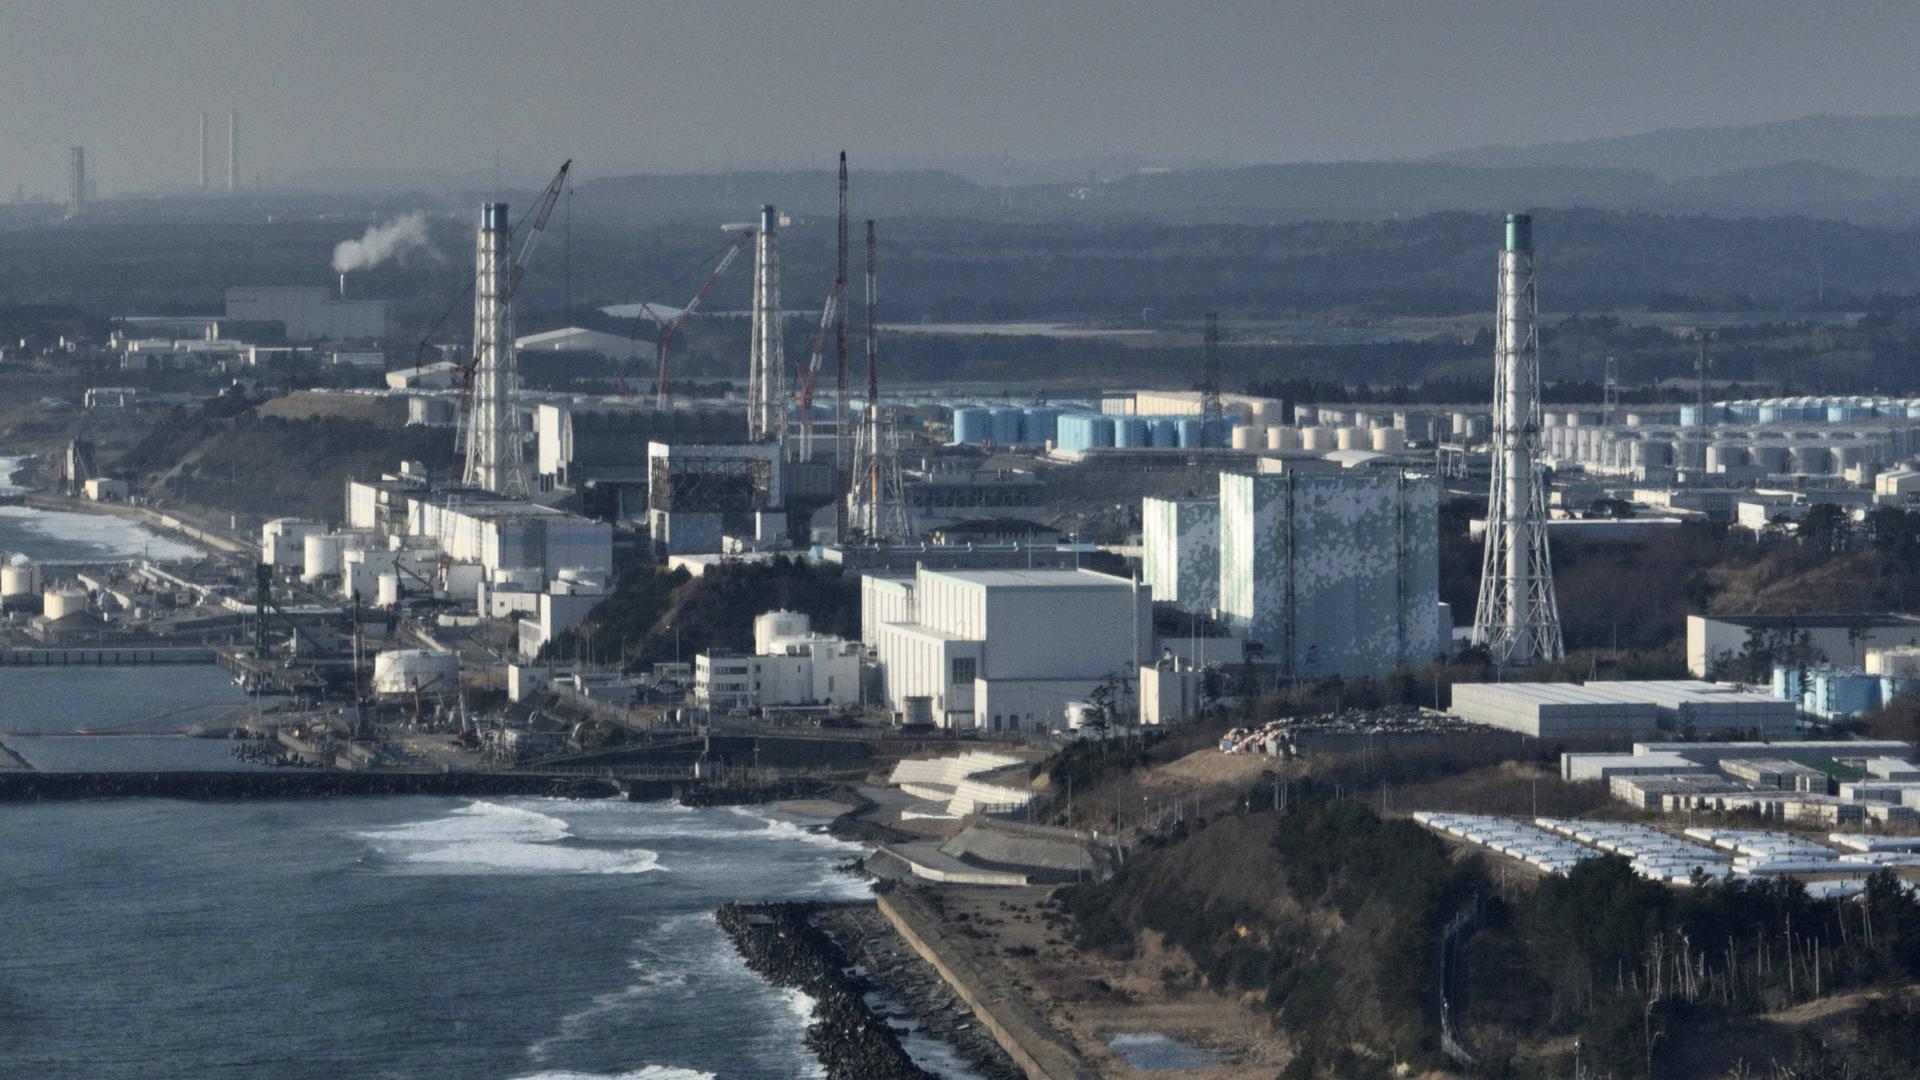 Luftaufnahme des Atomkraftwerks von Fukushima, in dem es 2011 nach einem Erdbeben und einem Tsunami vor der japanischen Küste in drei Reaktoren zu einer Kernmschmelze kam. 